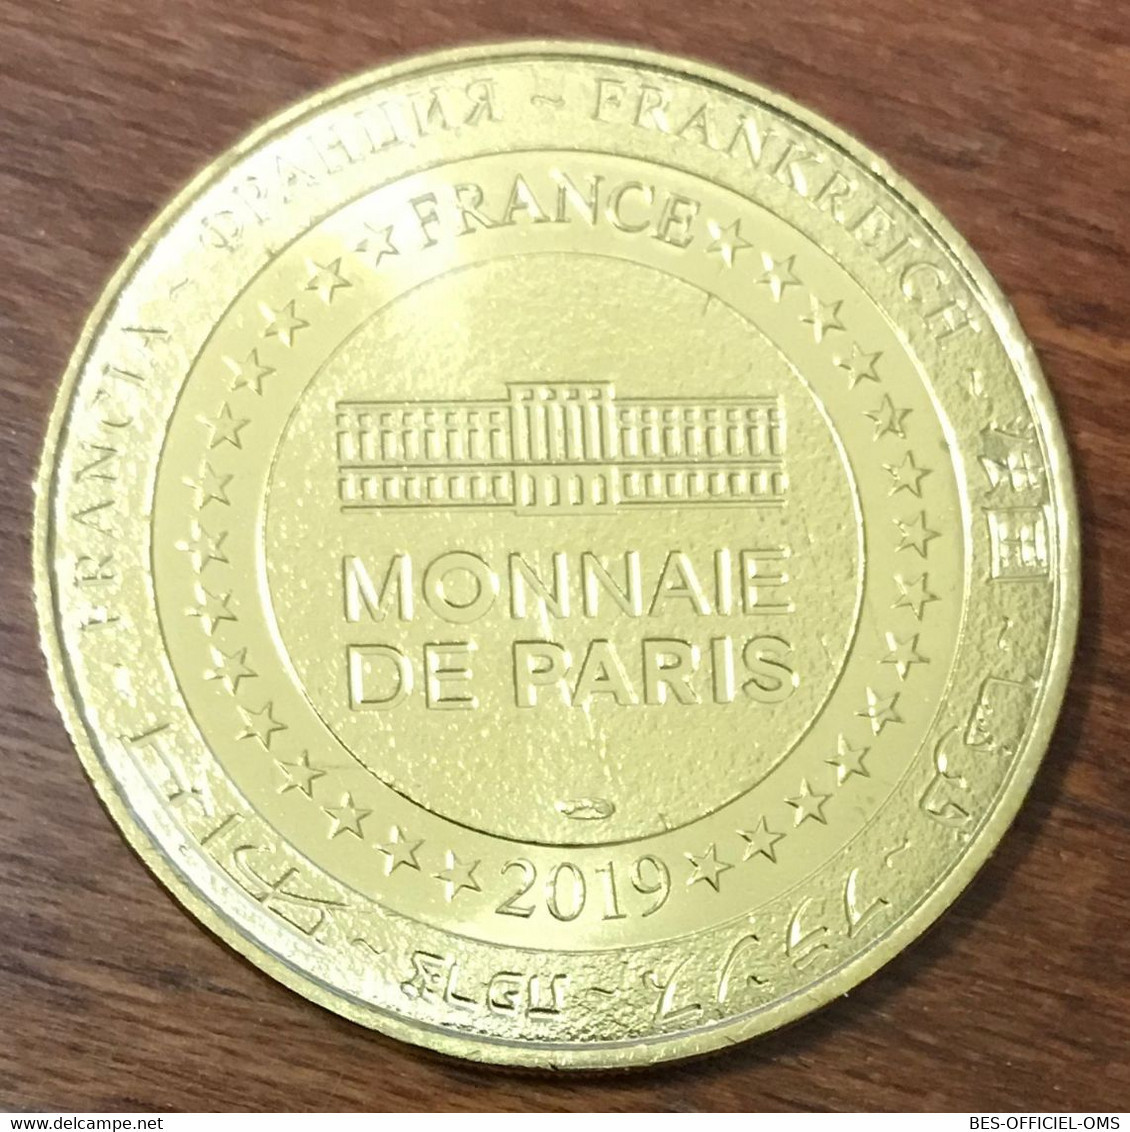 17 LA ROCHELLE AQUARIUM LE POULPE MDP 2019 MEDAILLE SOUVENIR MONNAIE DE PARIS JETON TOURISTIQUE MEDALS COINS TOKENS - 2019